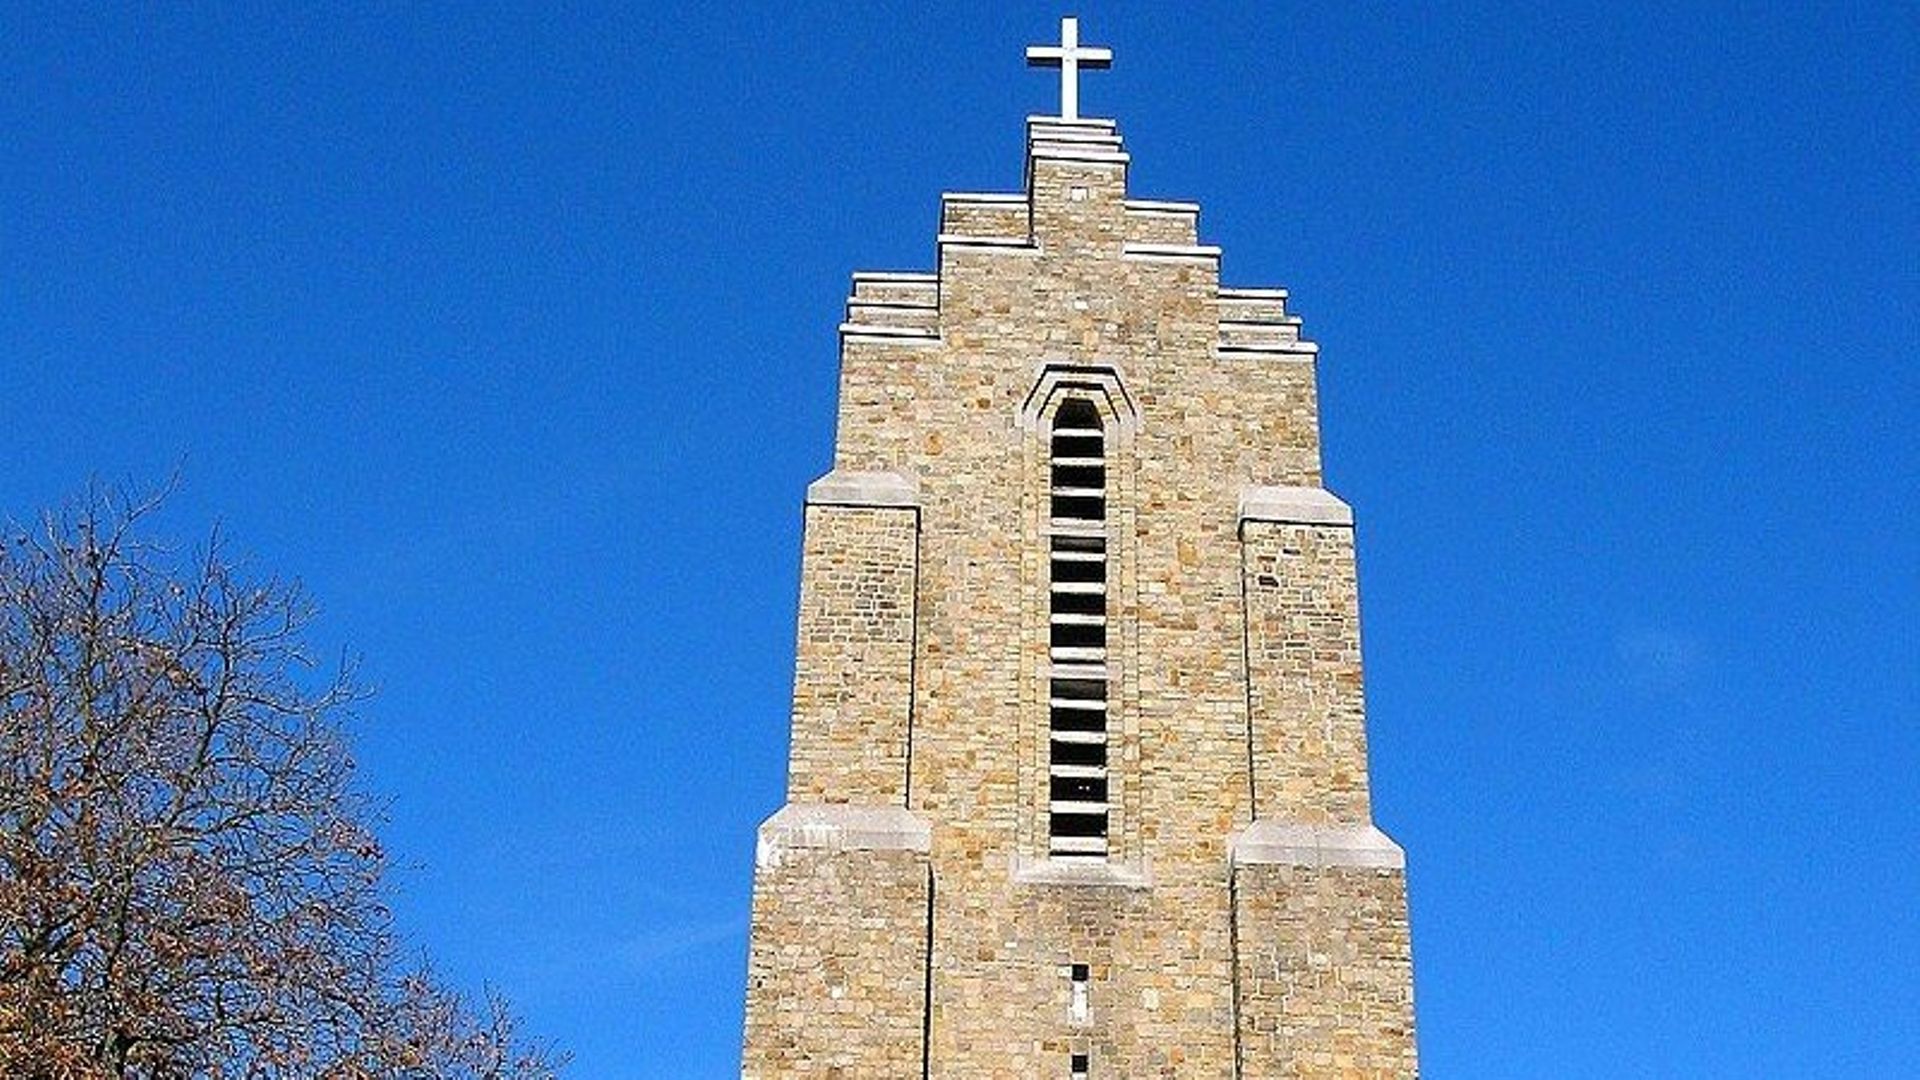 L’église du Sacré-Cœur sur la chaussée de Waterloo, à Saint-Servais.